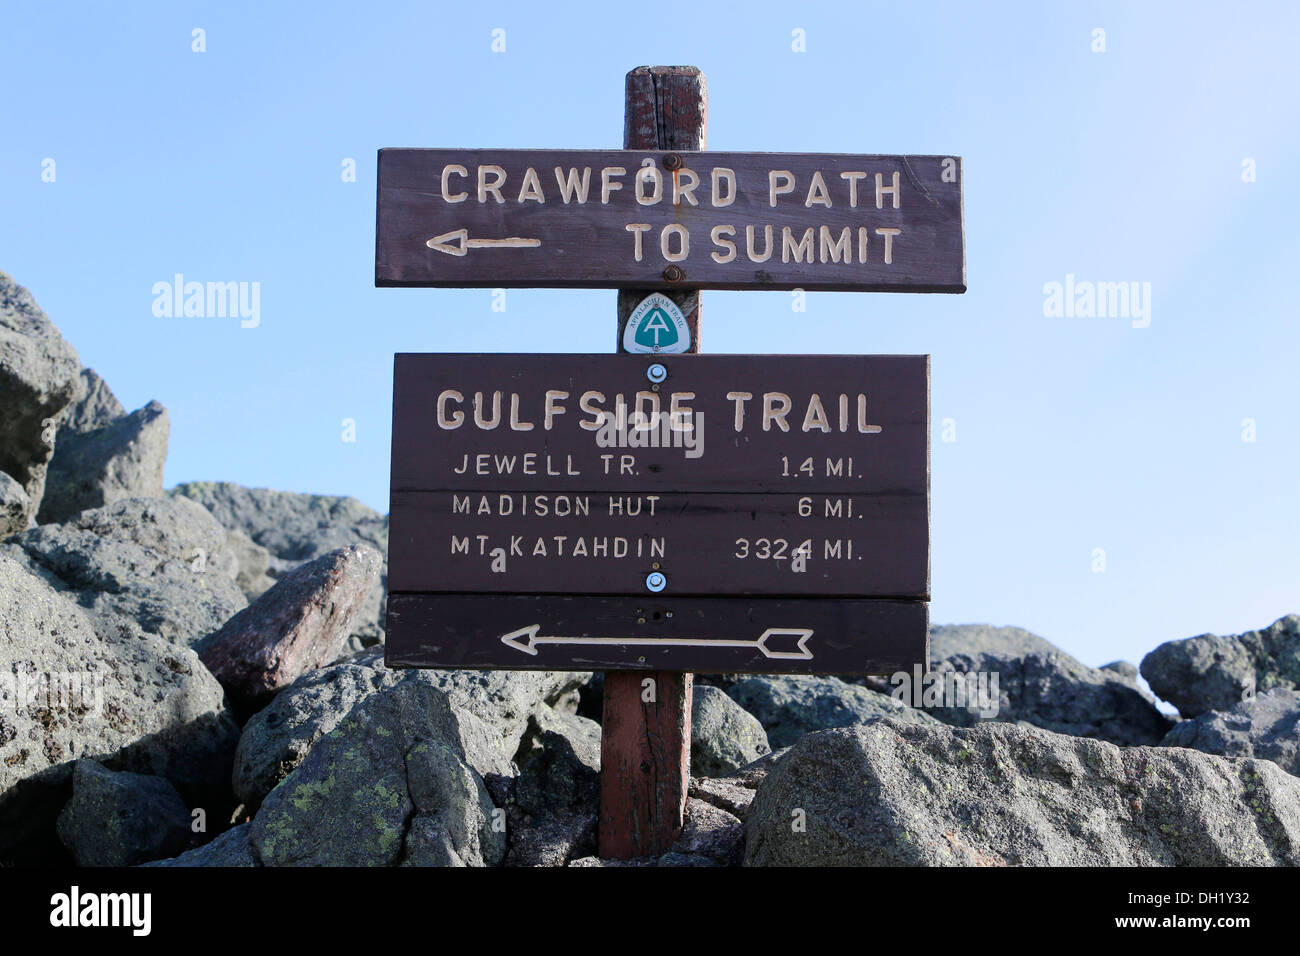 Signpost, Gulfside Trail, Appalachian Trail at the summit of Mount Washington, New Hampshire, USA Stock Photo